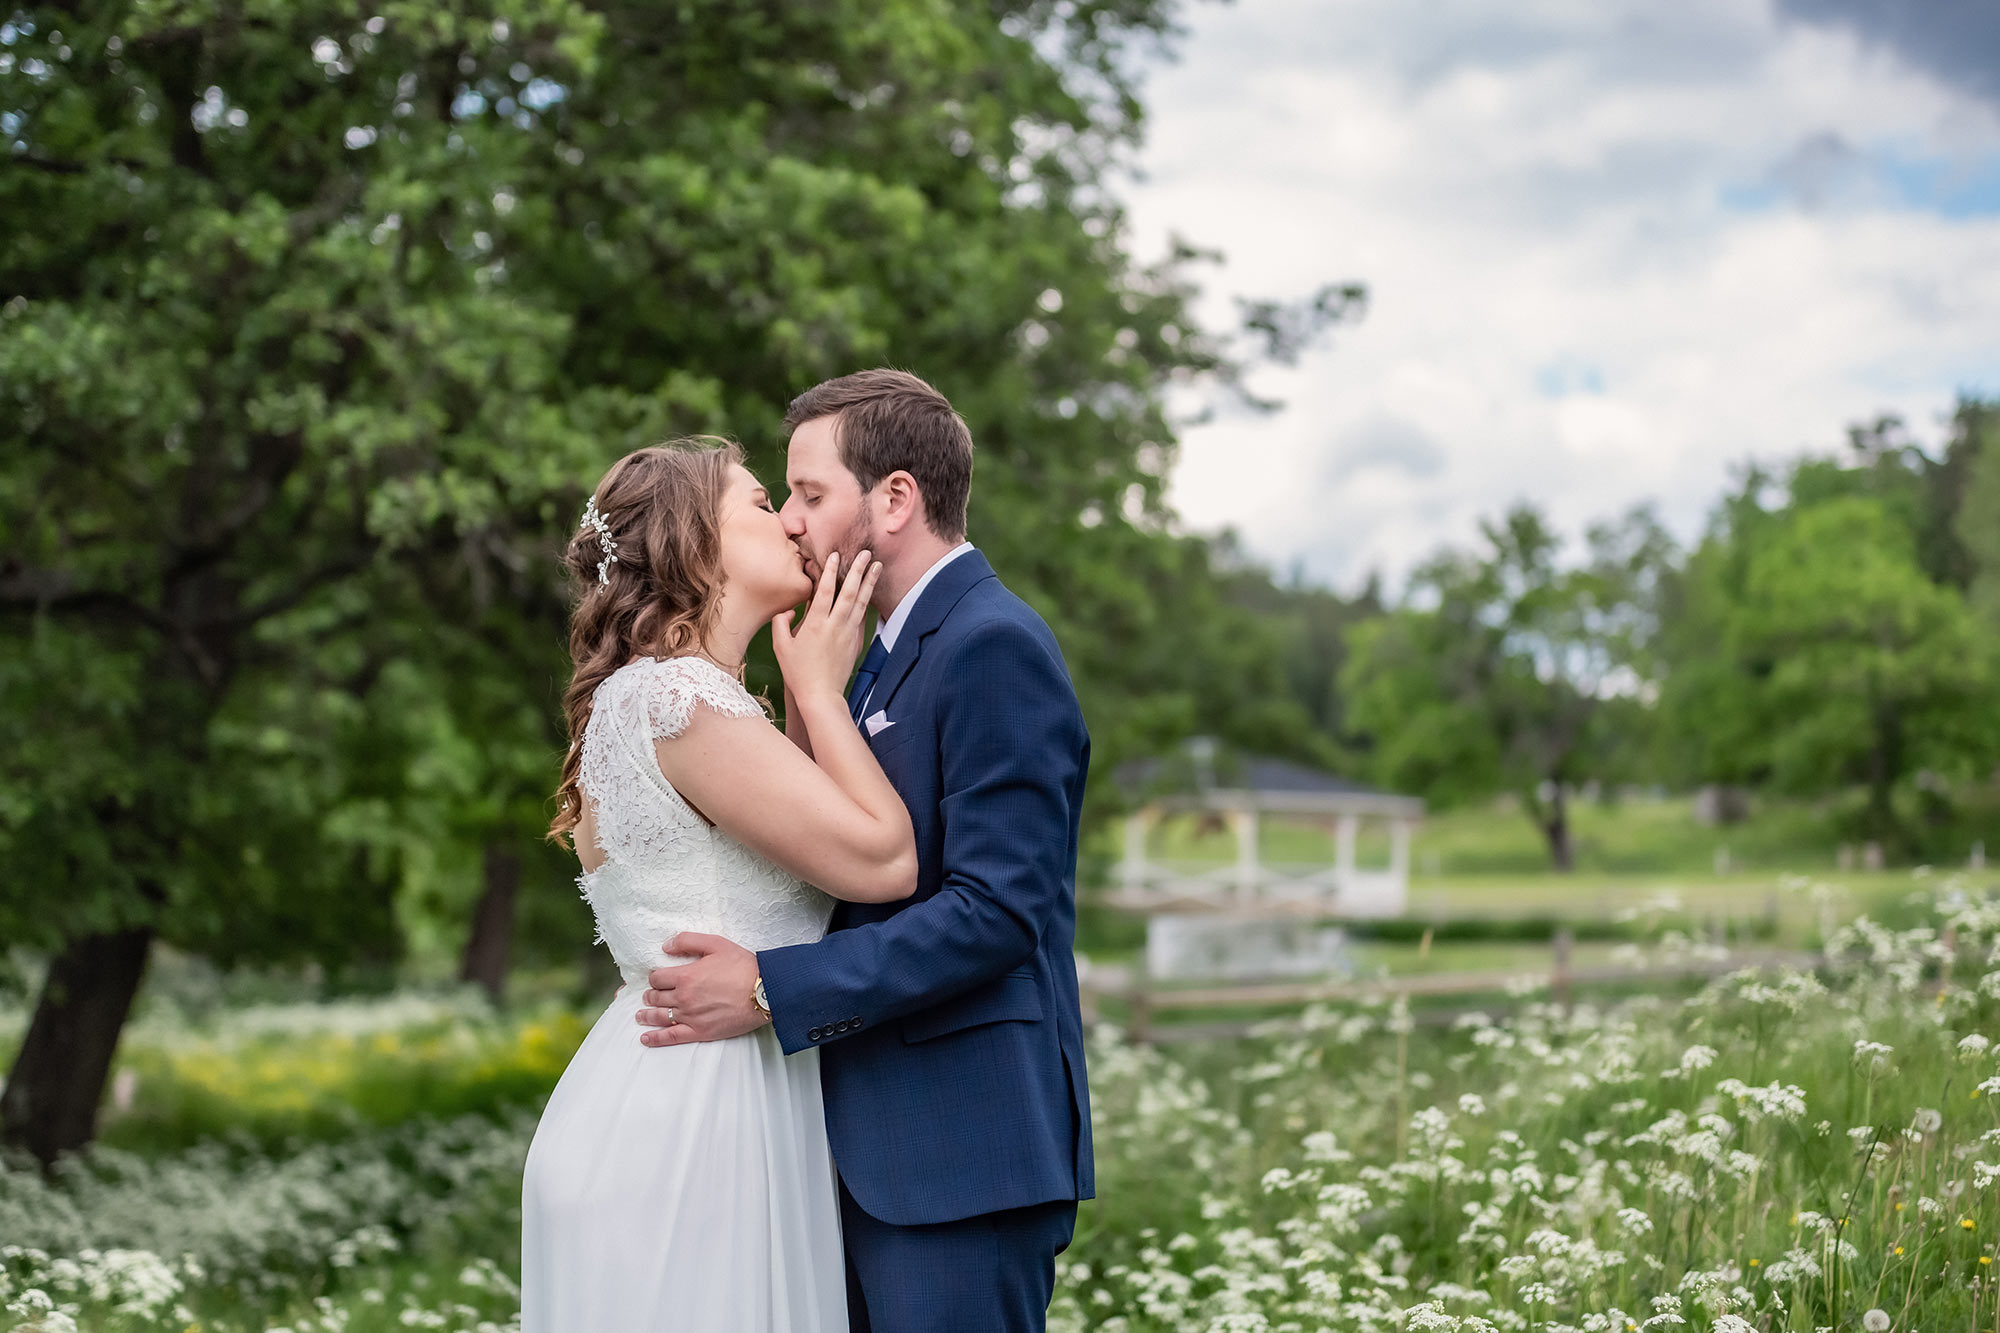 Bröllopspar pussas på en vacker sommaräng. I bakgrunden syns träd och en dansbana.